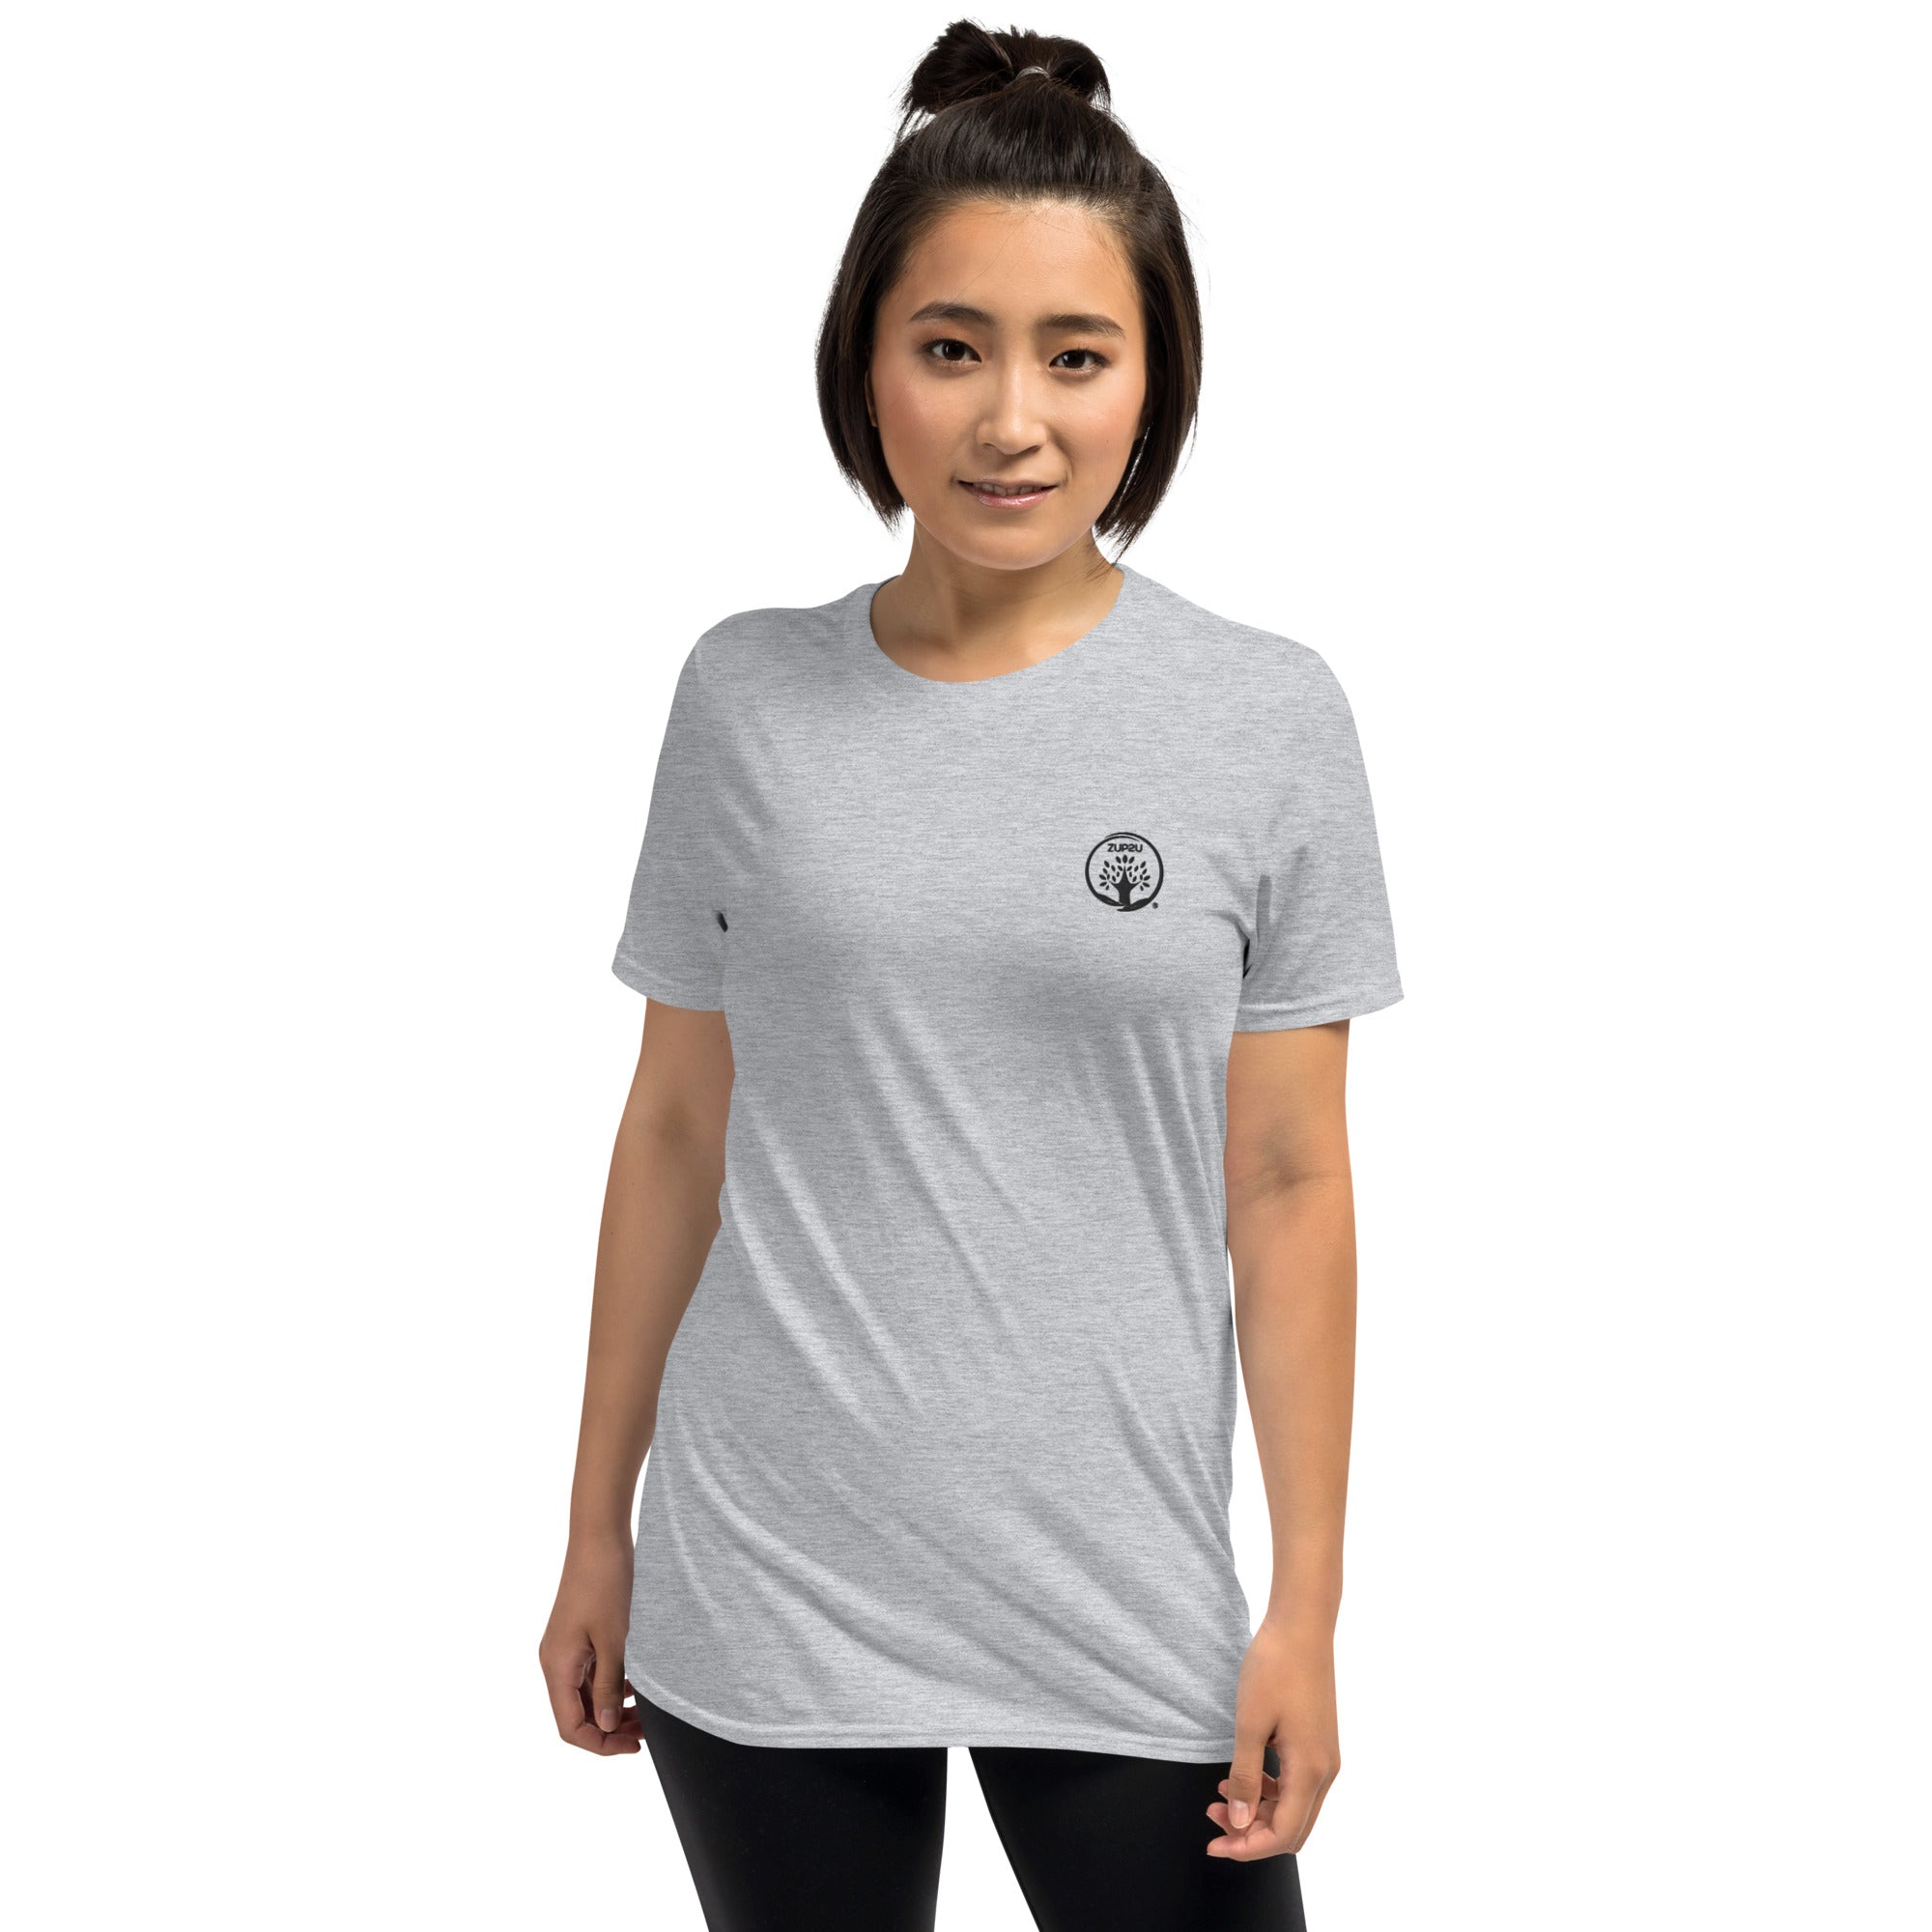 ZUP2U Short-Sleeve Unisex T-Shirt